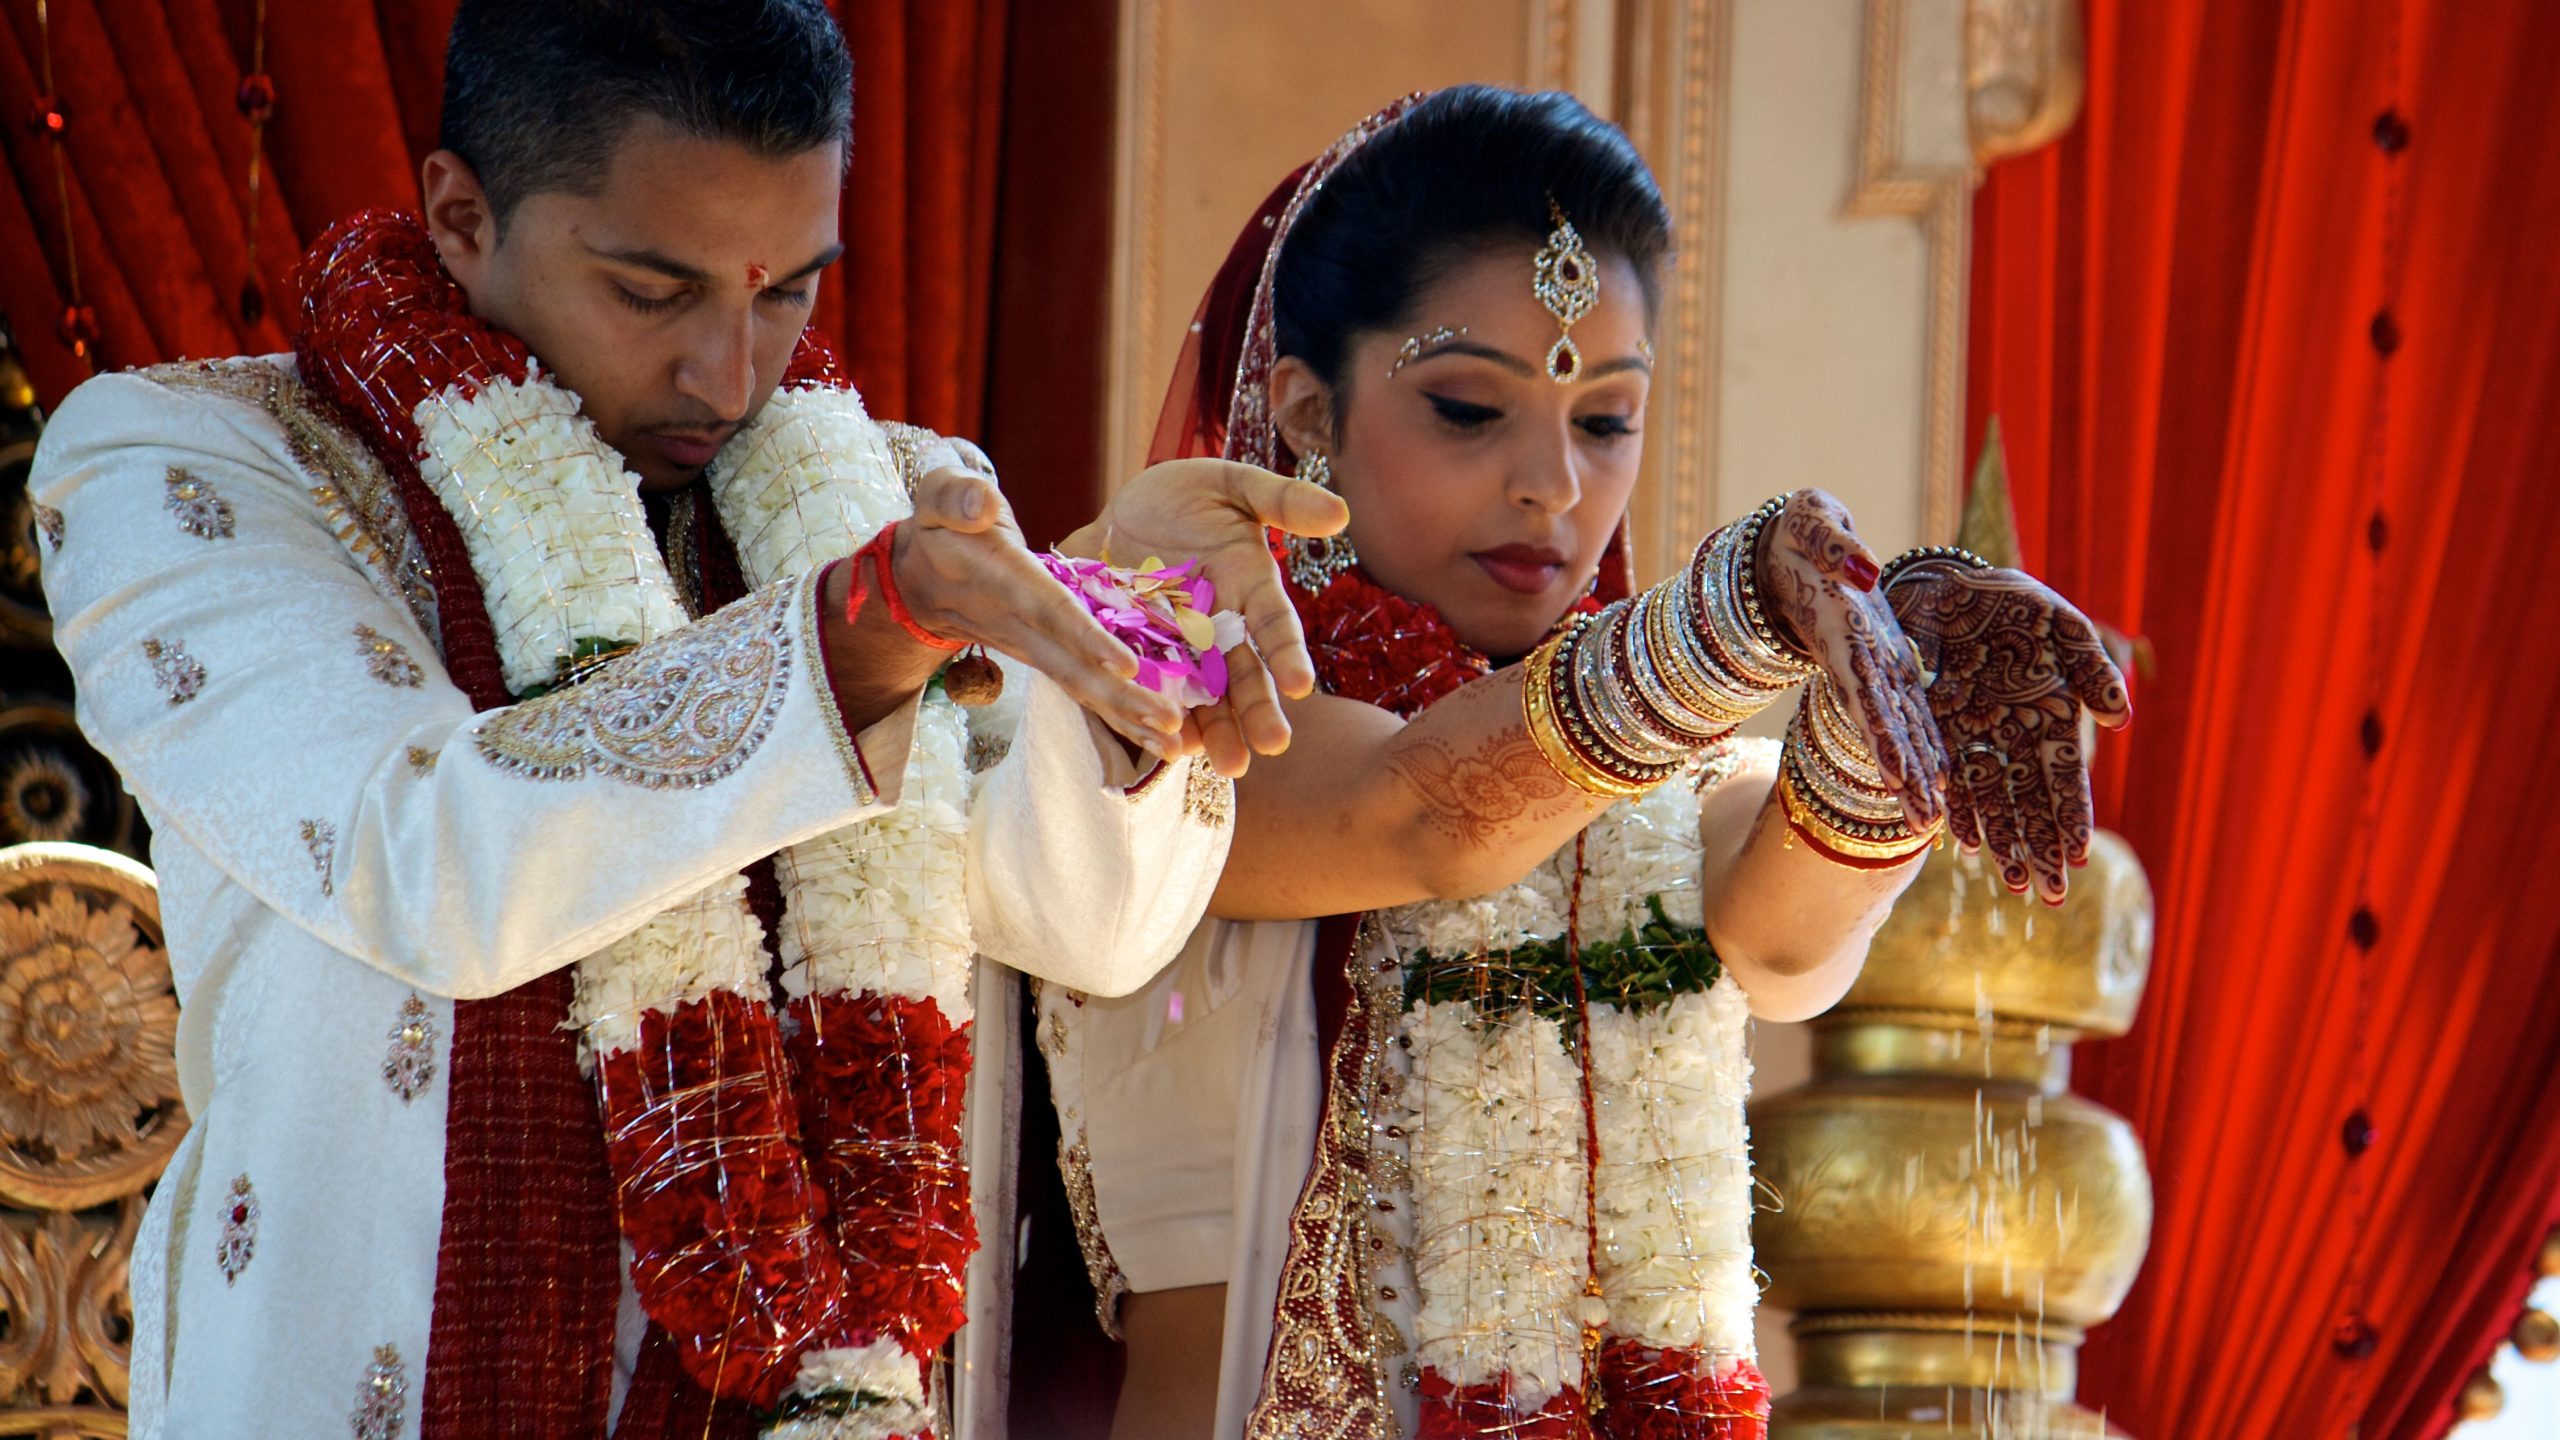 Marriage in Hindu